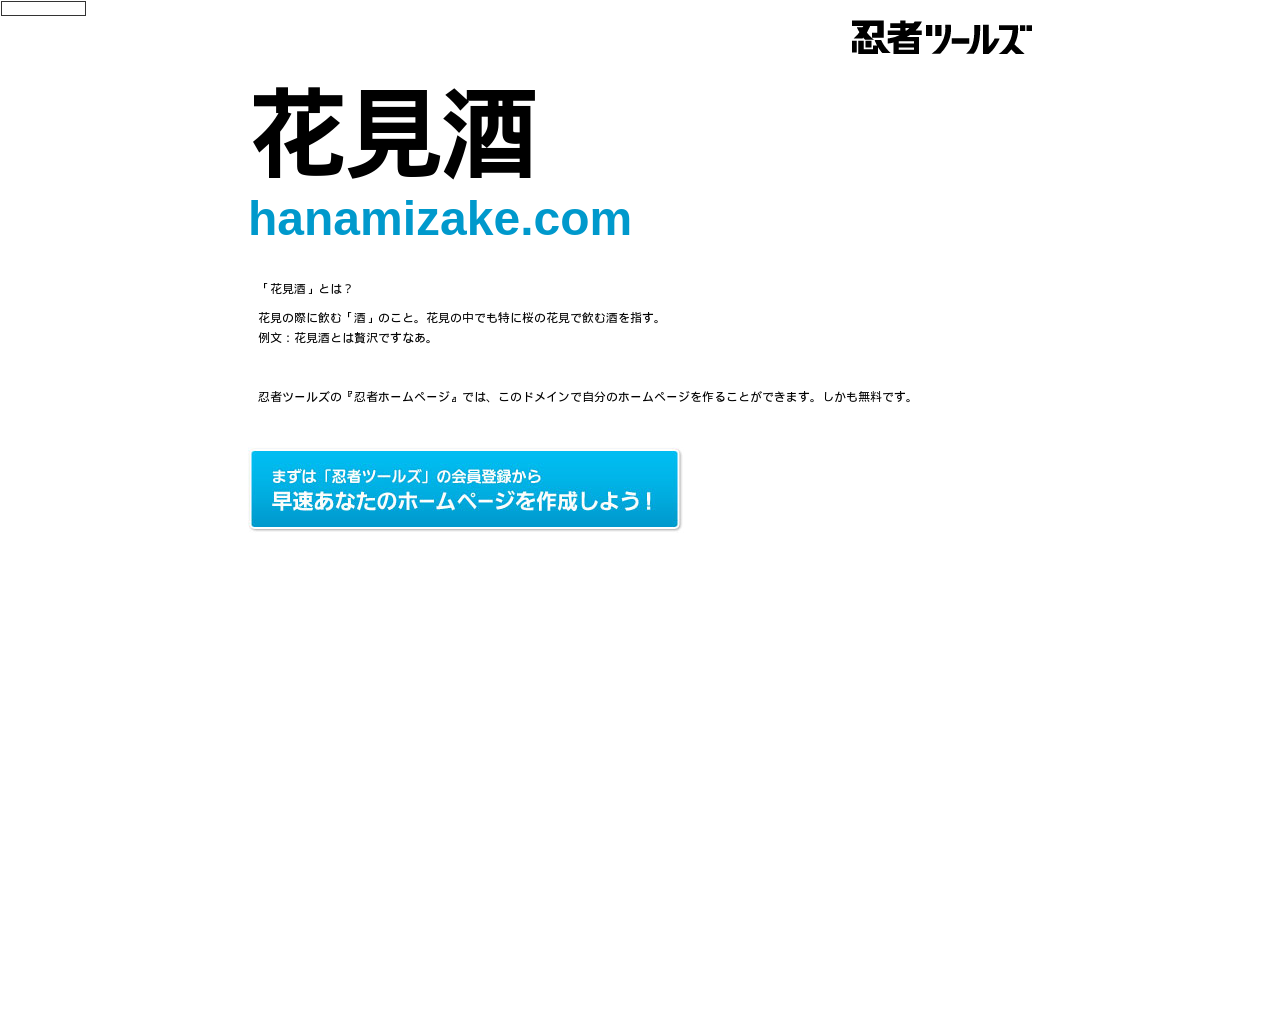 hanamizake.com